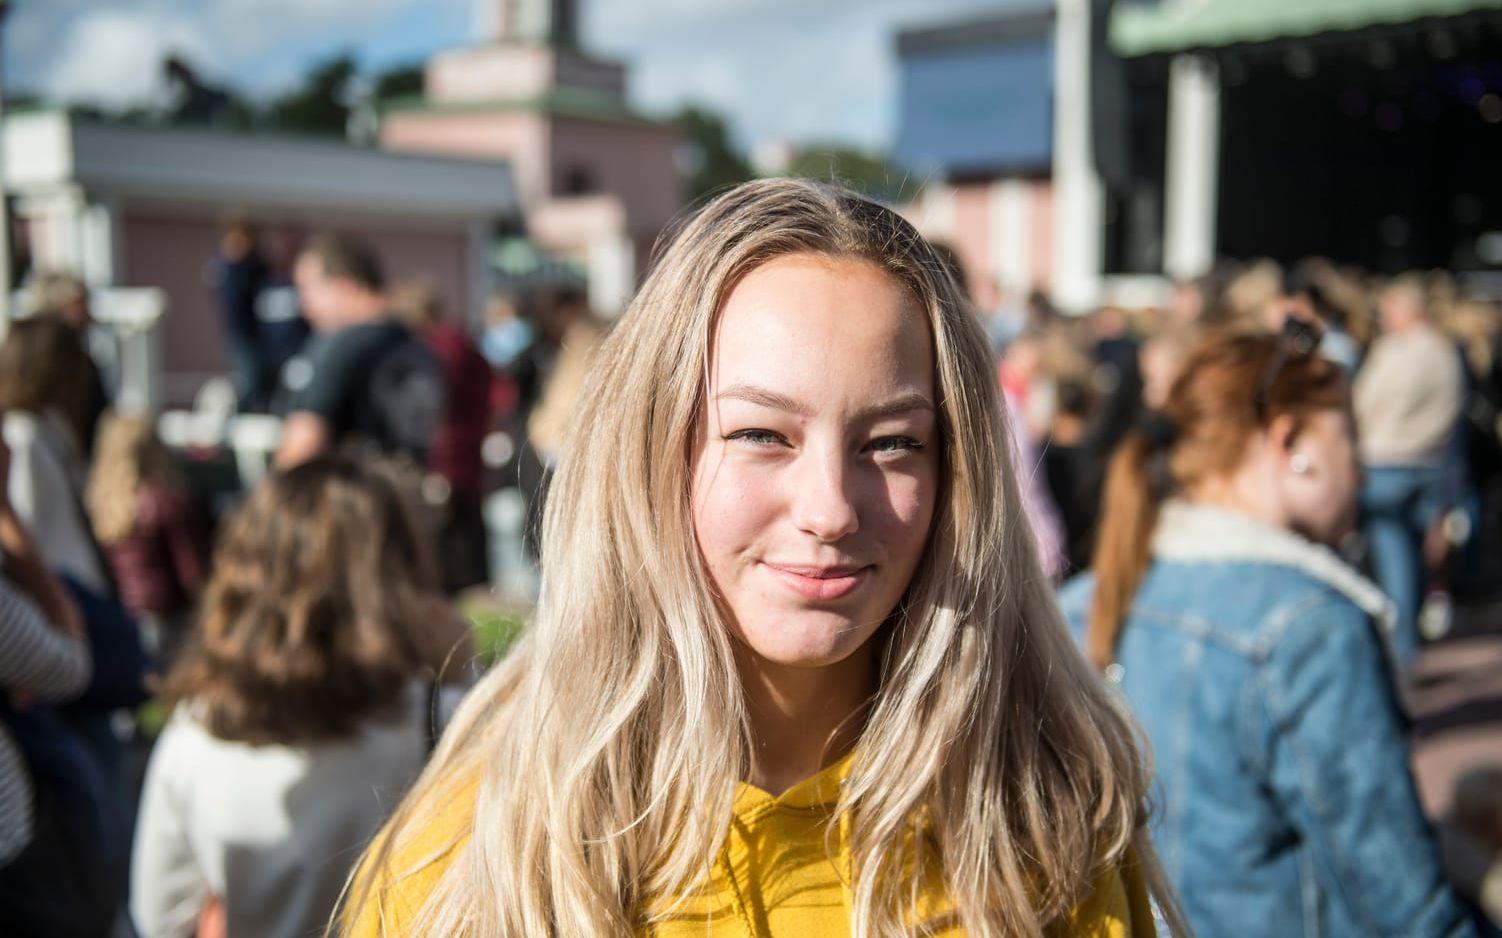 Maja Wiström, 17 år, Partille: "Jag gillar deras musik bara. Det är min musiksmak. Kärleksbrev är min favoritlåt, den texten är väldigt bra." Foto: Olof Ohlsson.